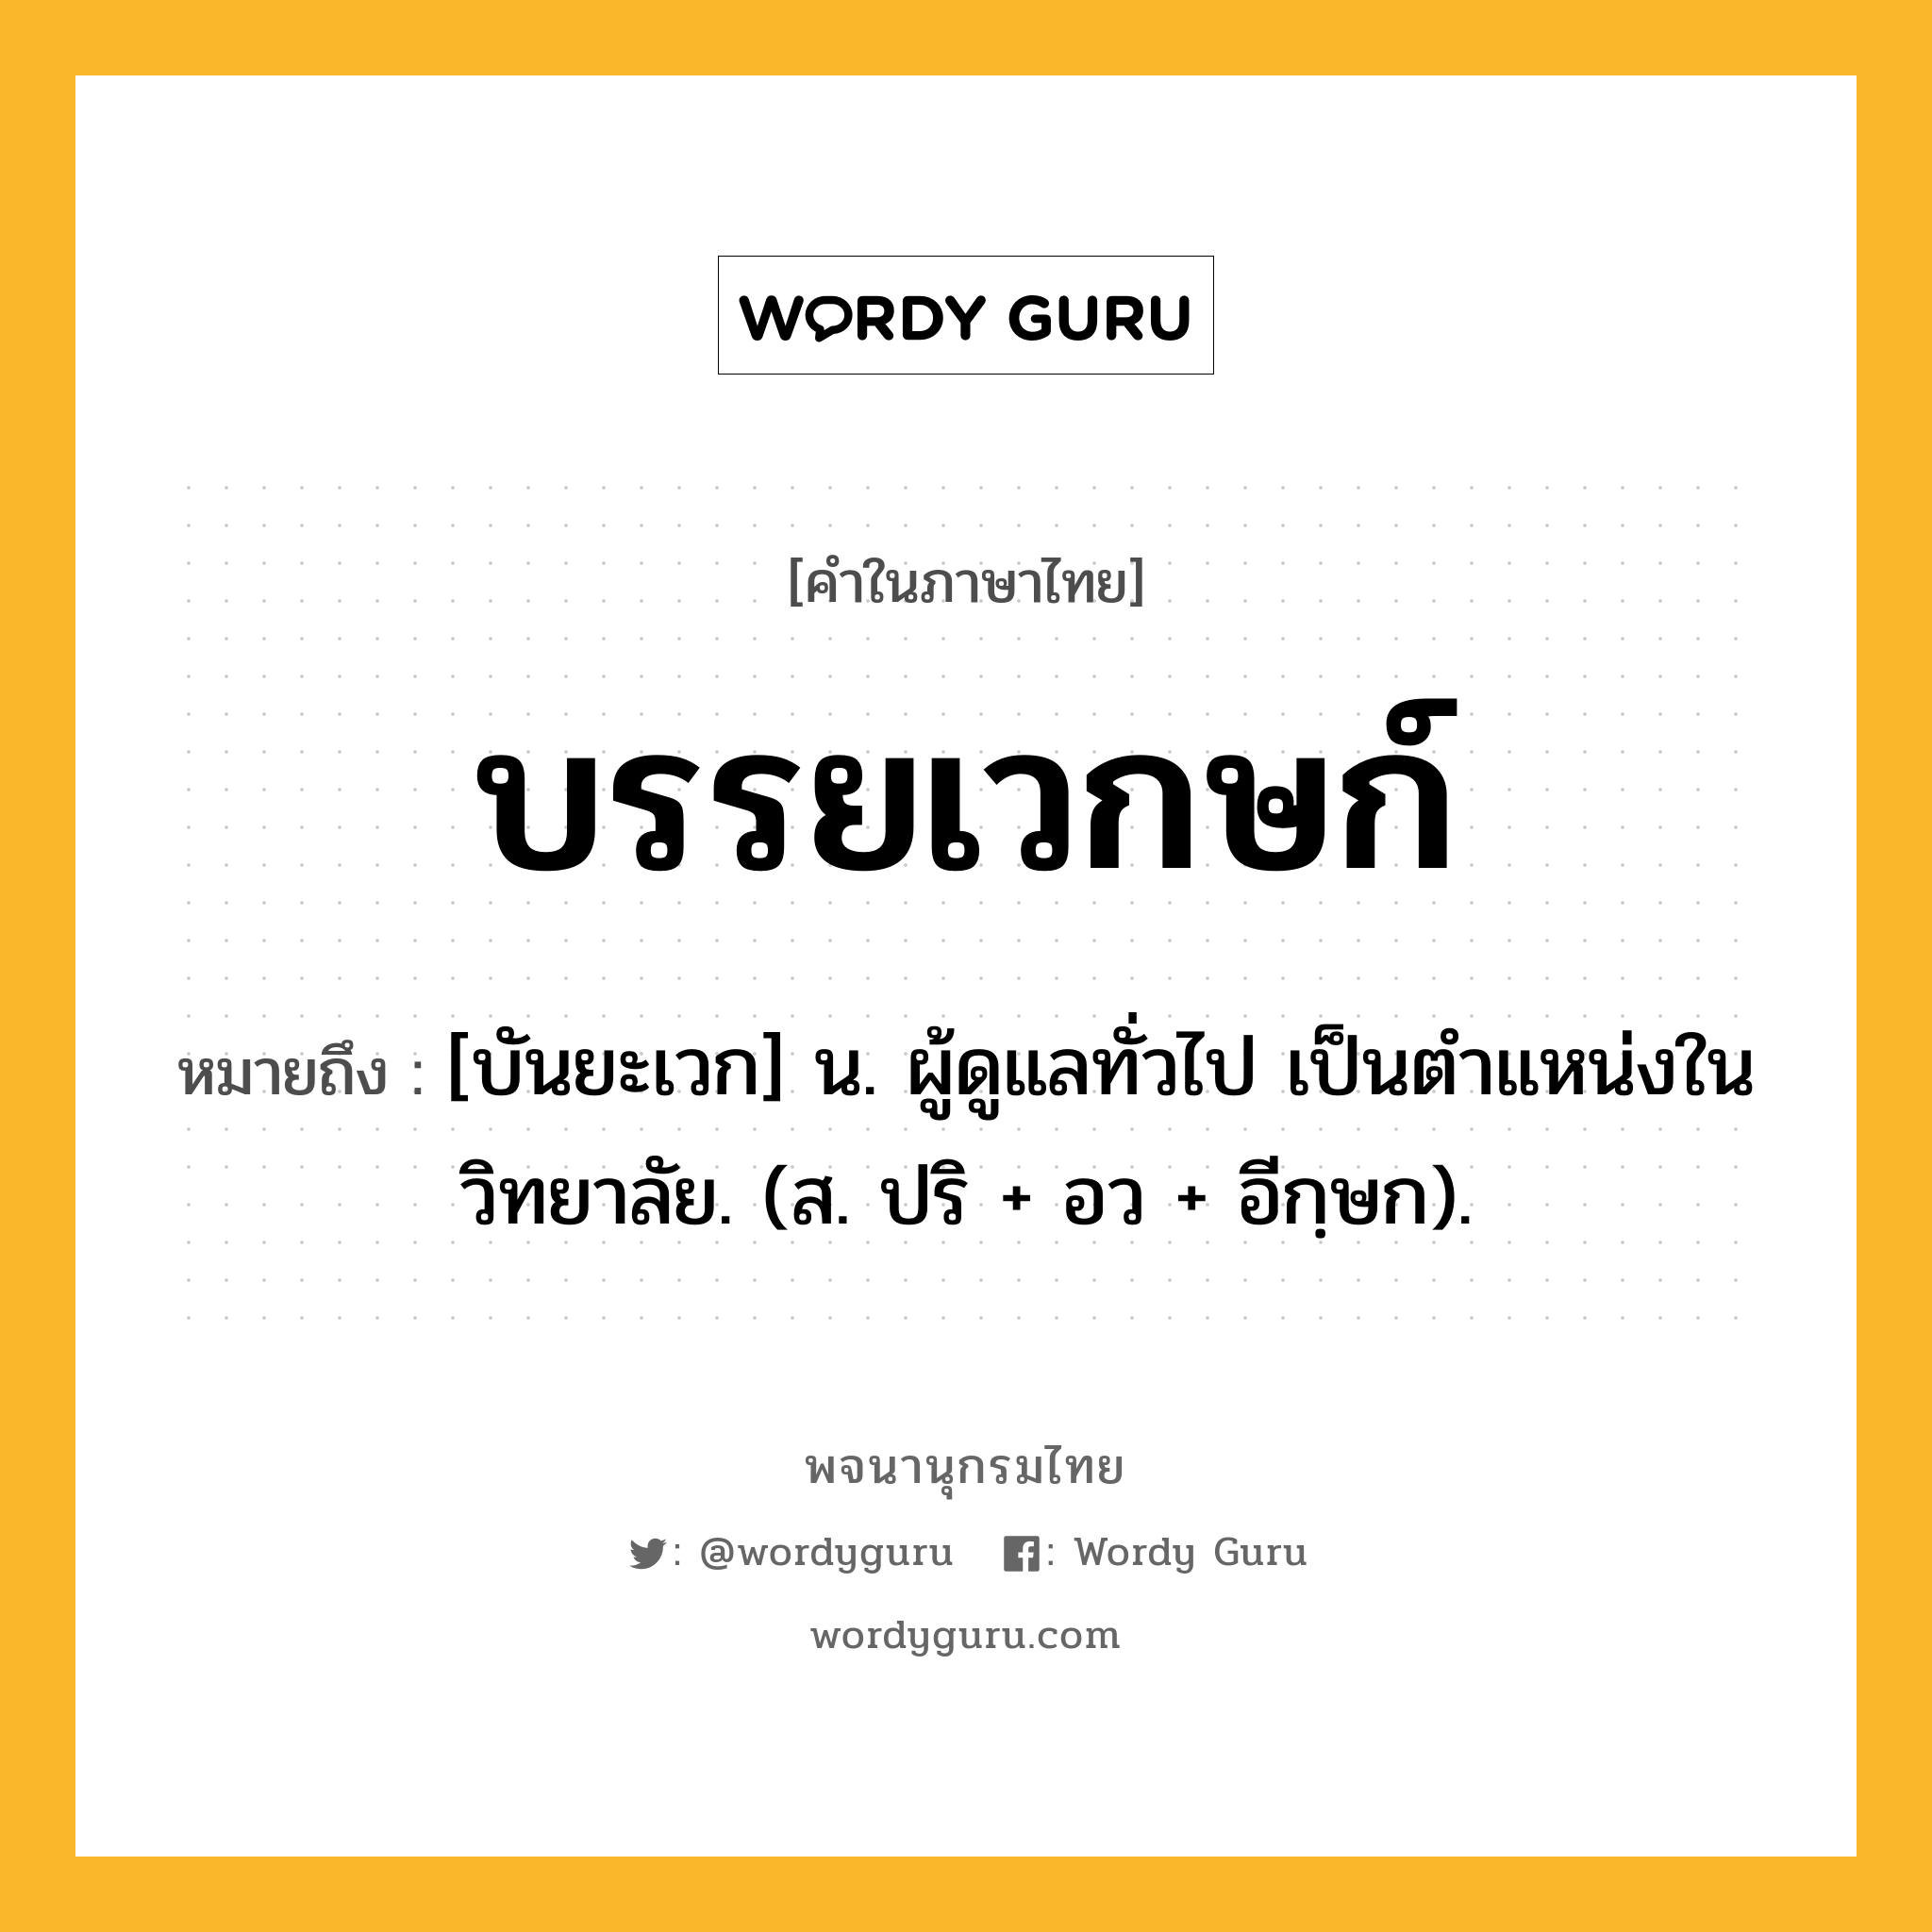 บรรยเวกษก์ หมายถึงอะไร?, คำในภาษาไทย บรรยเวกษก์ หมายถึง [บันยะเวก] น. ผู้ดูแลทั่วไป เป็นตําแหน่งในวิทยาลัย. (ส. ปริ + อว + อีกฺษก).